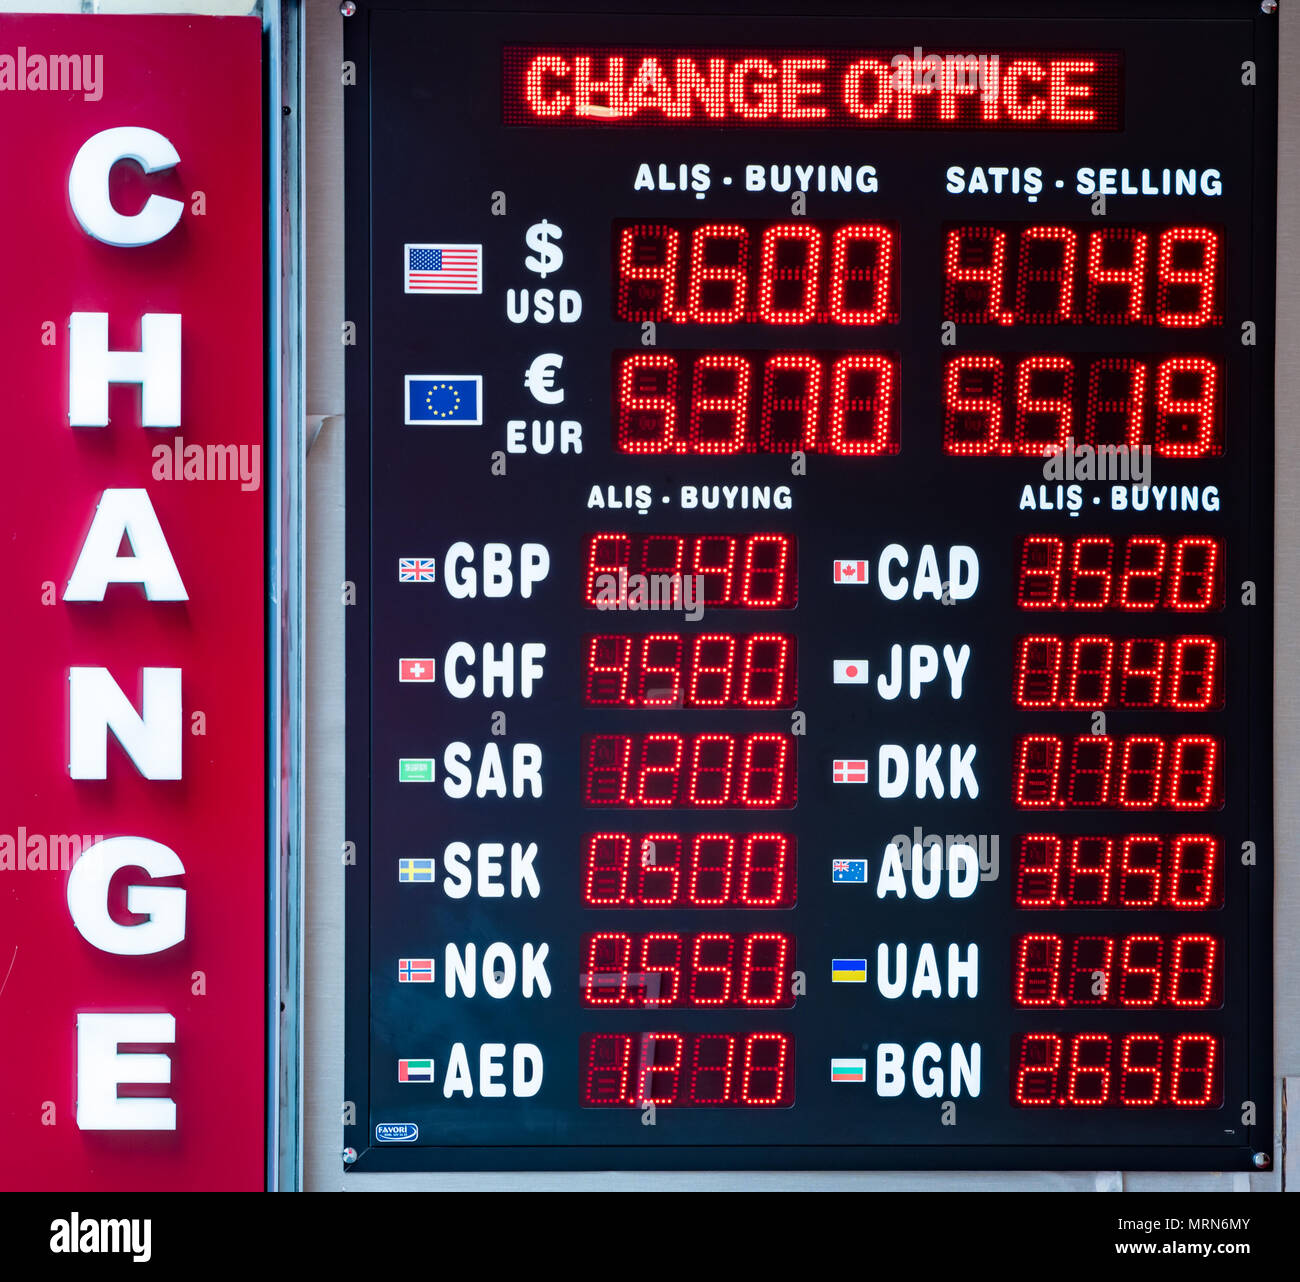 Foreign exchange rate display board Banque de photographies et d'images à  haute résolution - Alamy